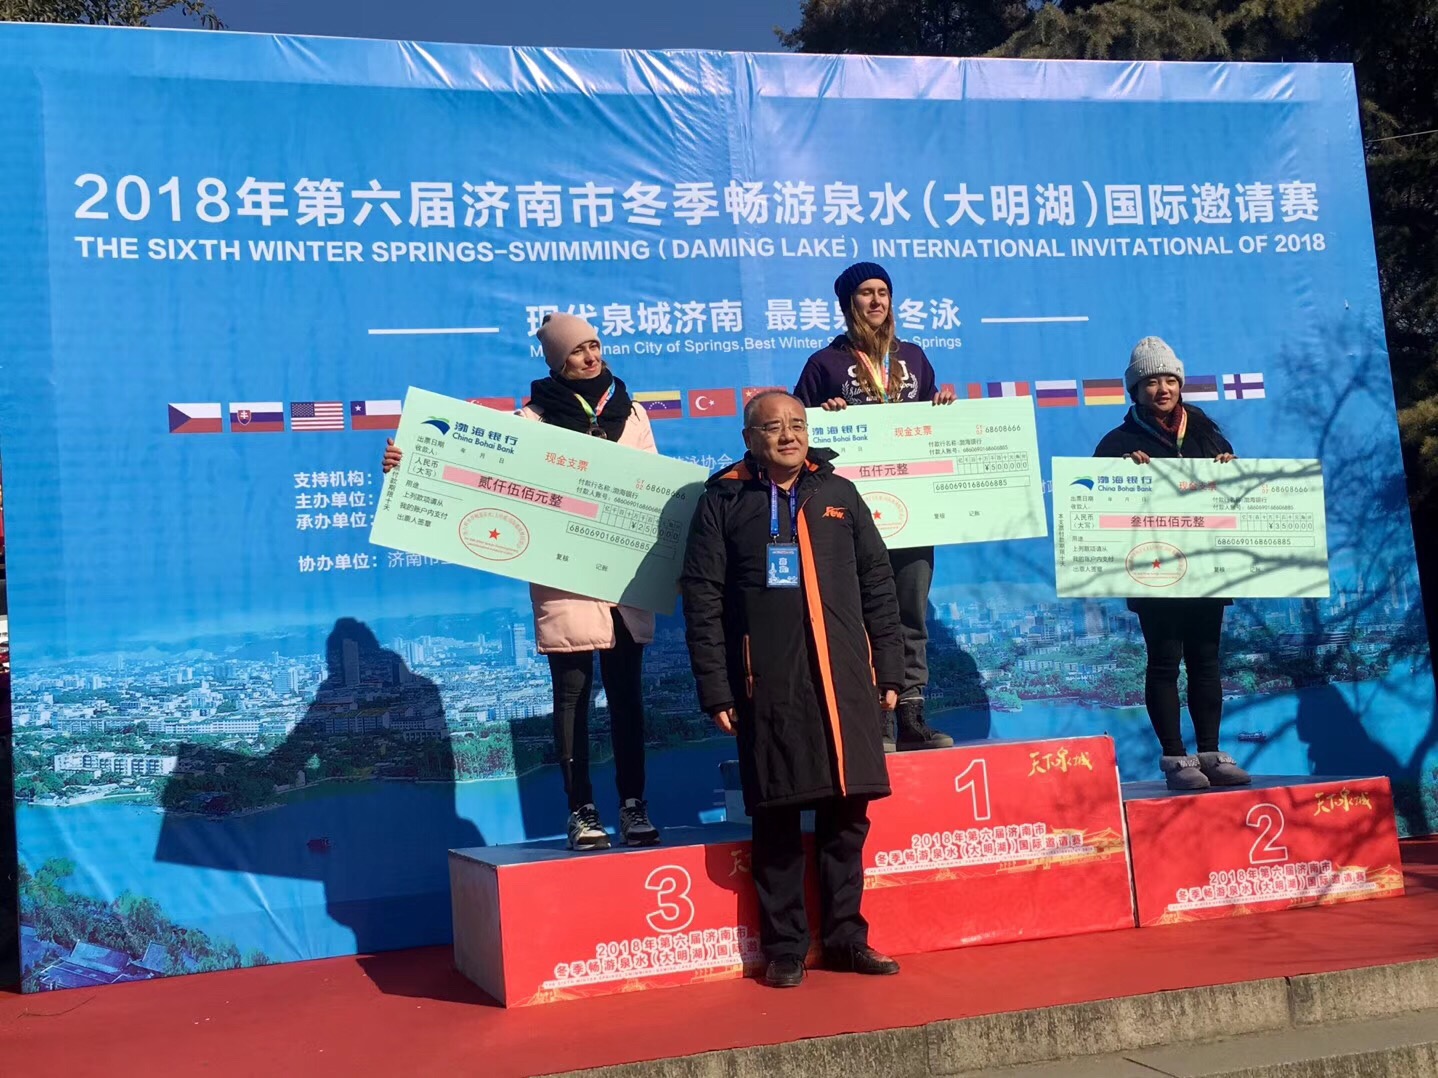 济南市开启第六届国际冬季畅游泉水邀请赛